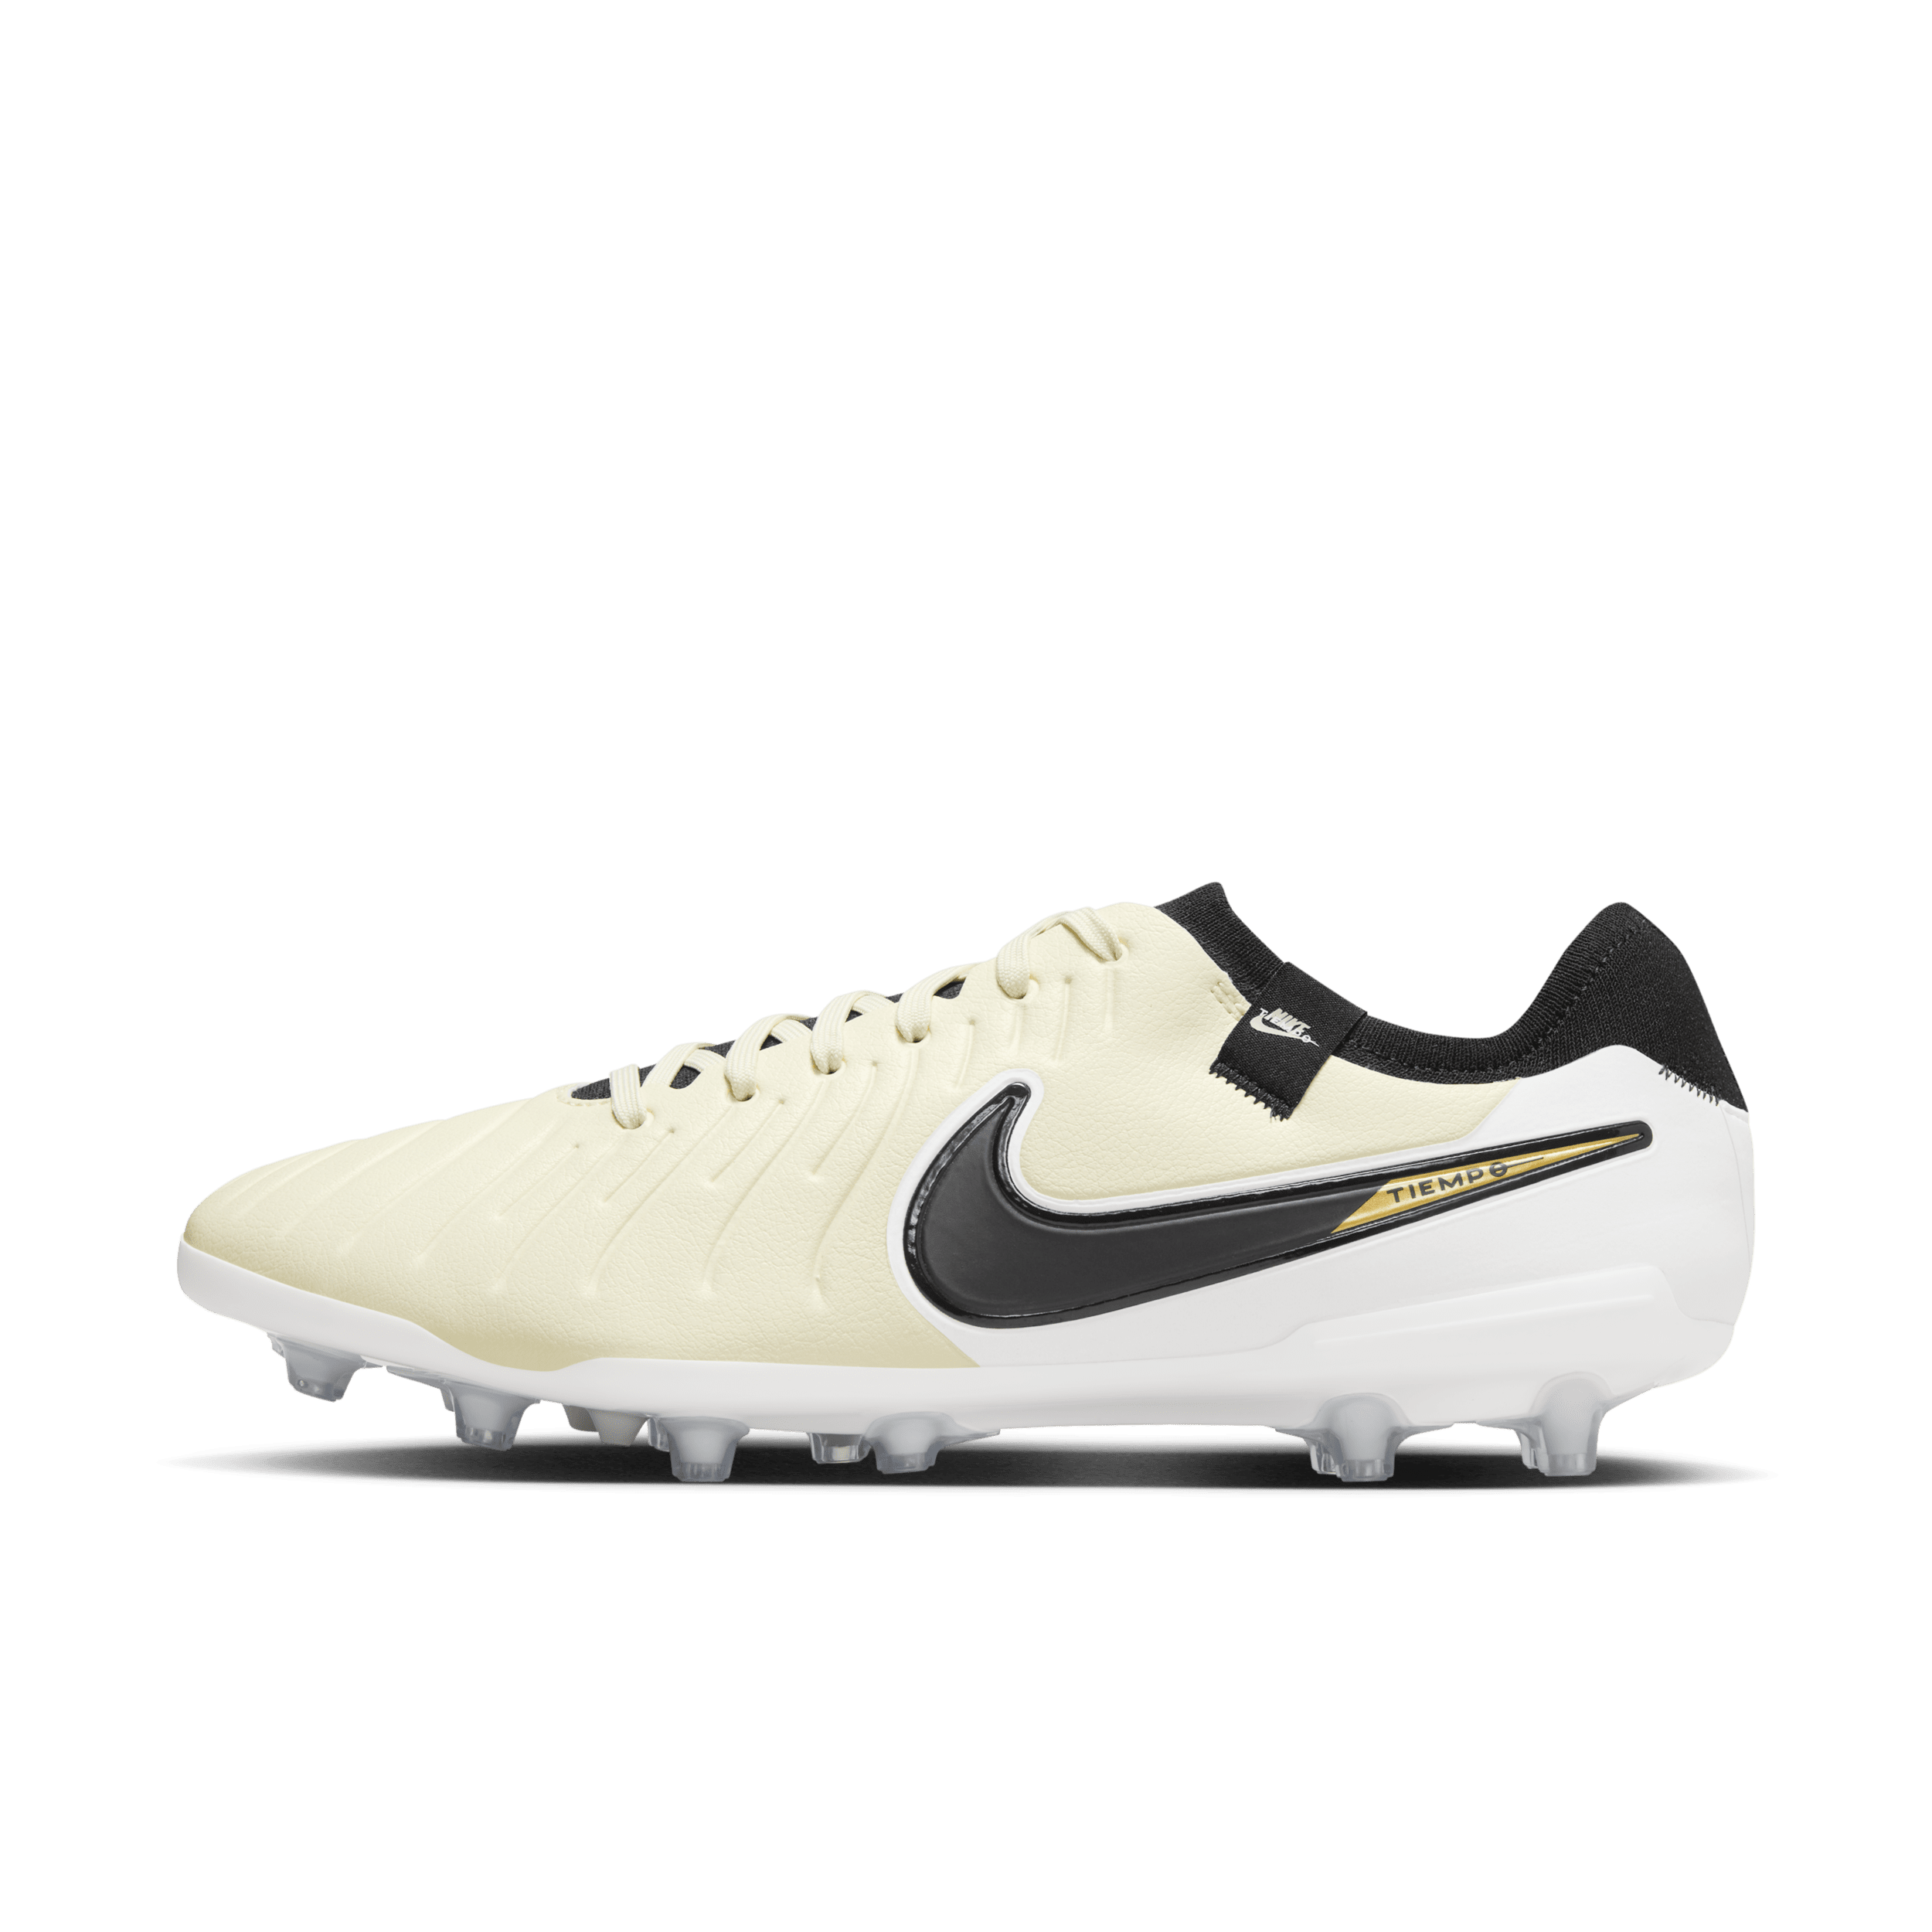 Nike Tiempo Legend 10 Pro low top voetbalschoenen (kunstgras) - Geel